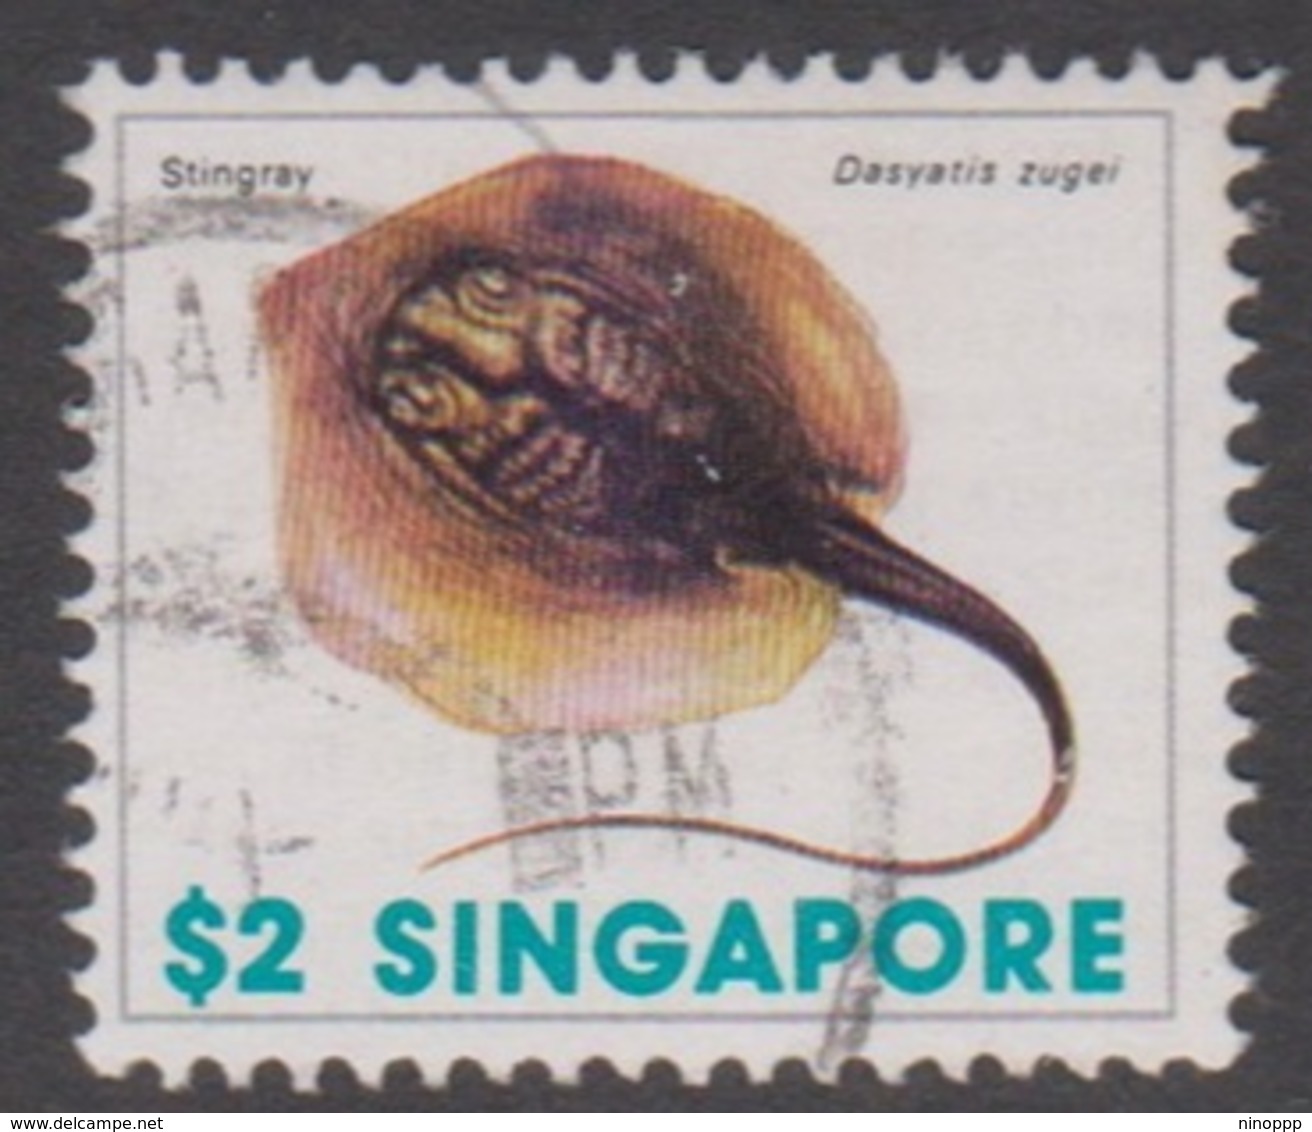 Singapore 302 1977 Marine Life Definitive,$ 2 Sting Ray, Used - Singapore (1959-...)